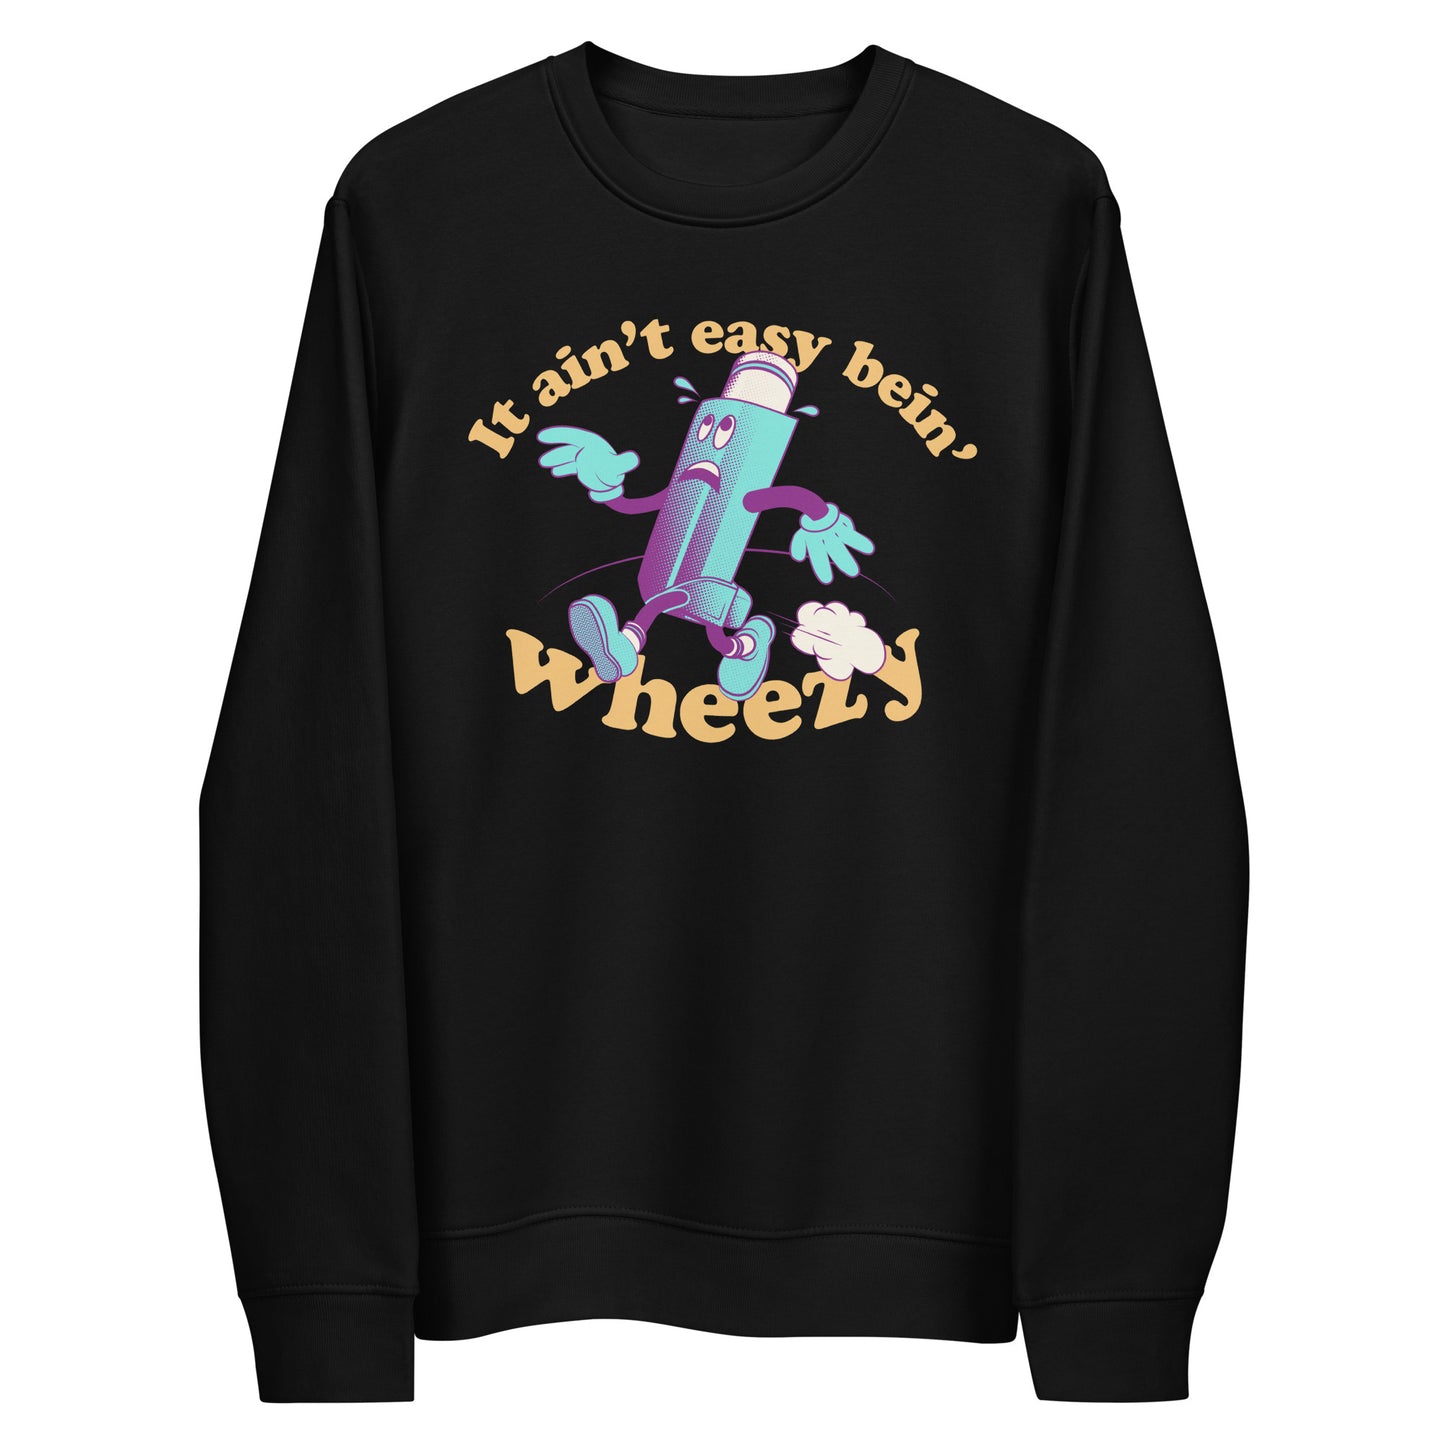 It ain't easy bein' wheezy - Sweatshirt